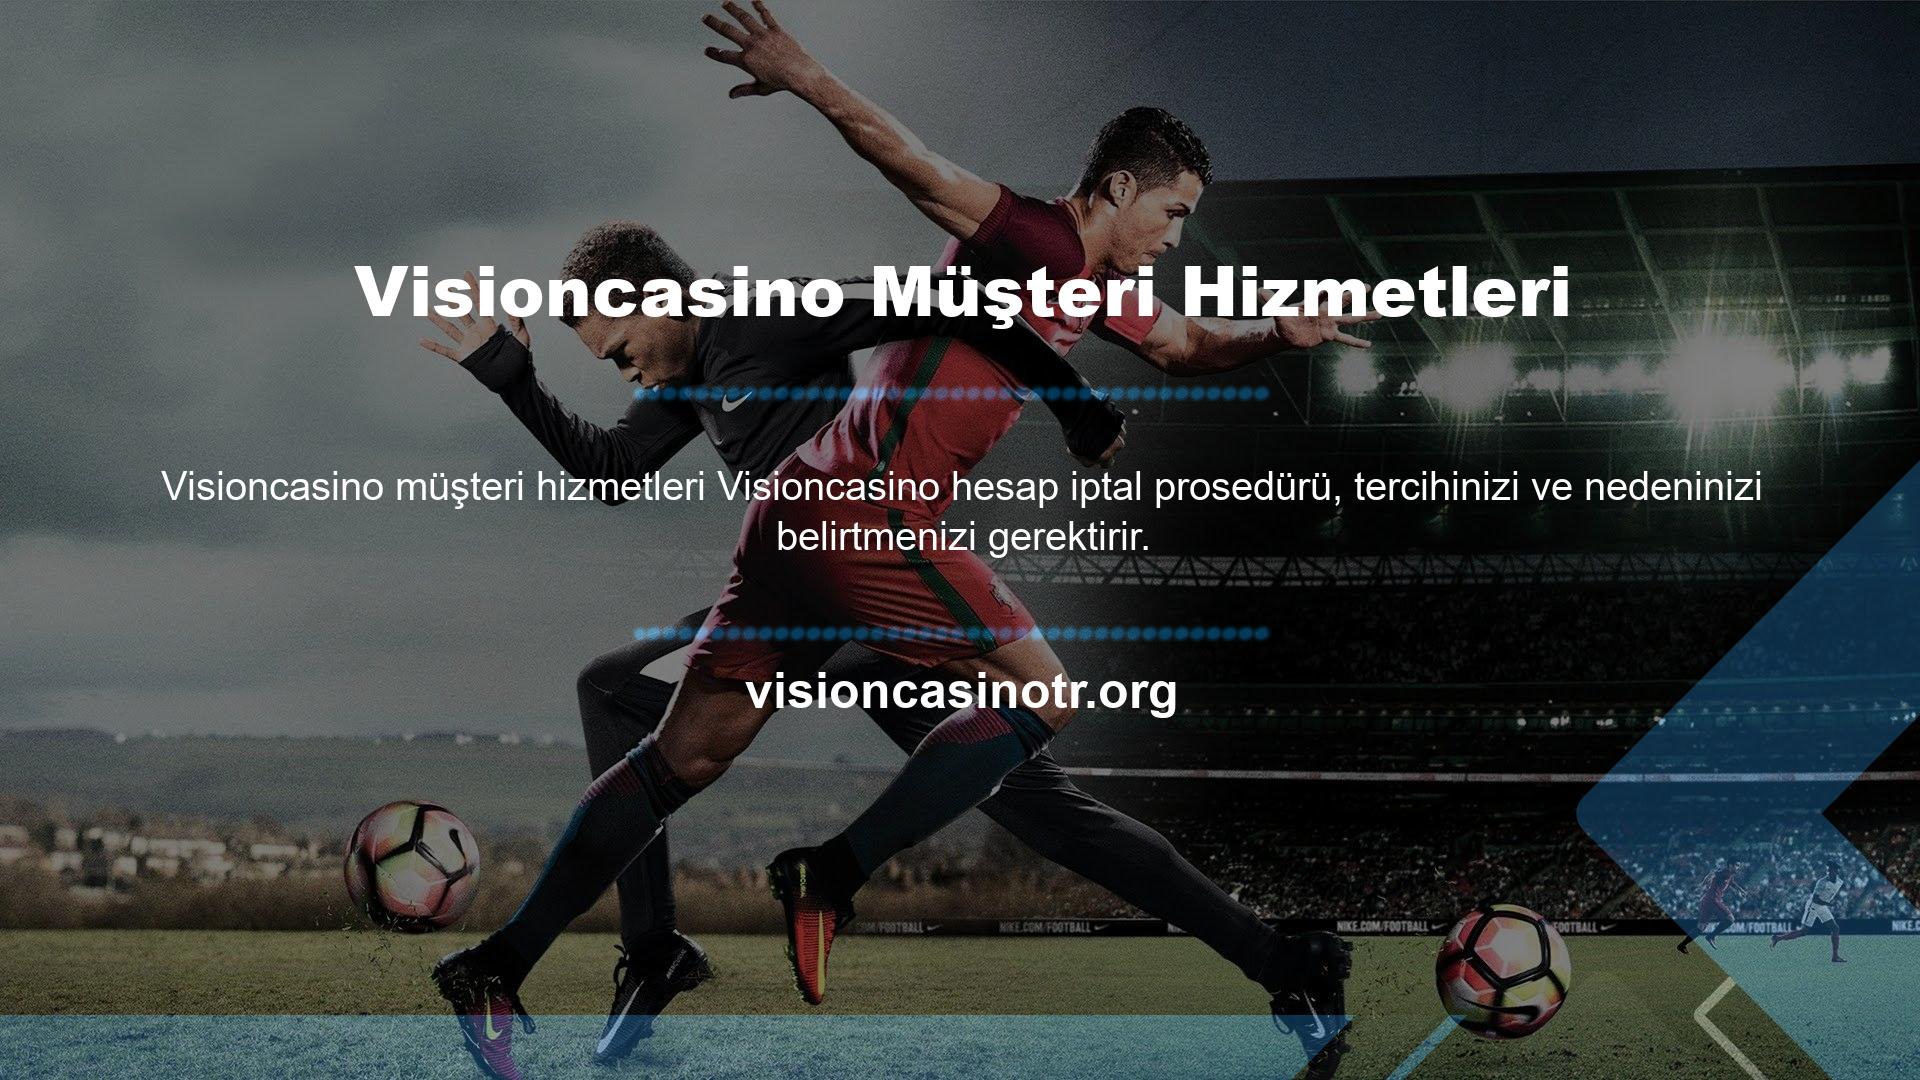 Bu nedenle kullanıcının sorunu siteden kaynaklanıyorsa Visioncasino sorunu çözmek için gerekli tüm önlemleri alacaktır